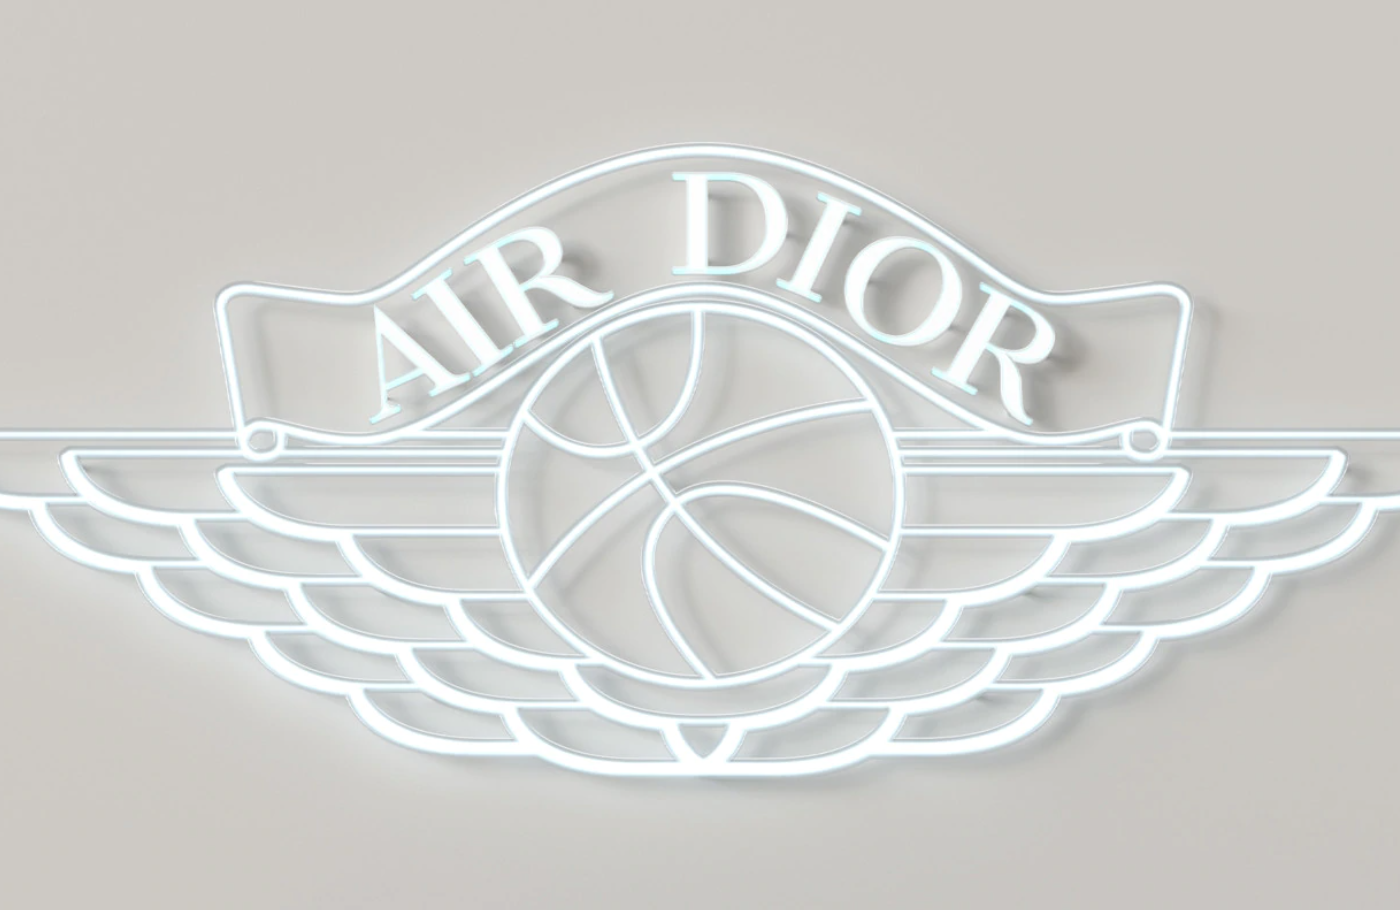 Air Dior Jordan 1 Releasing Online 